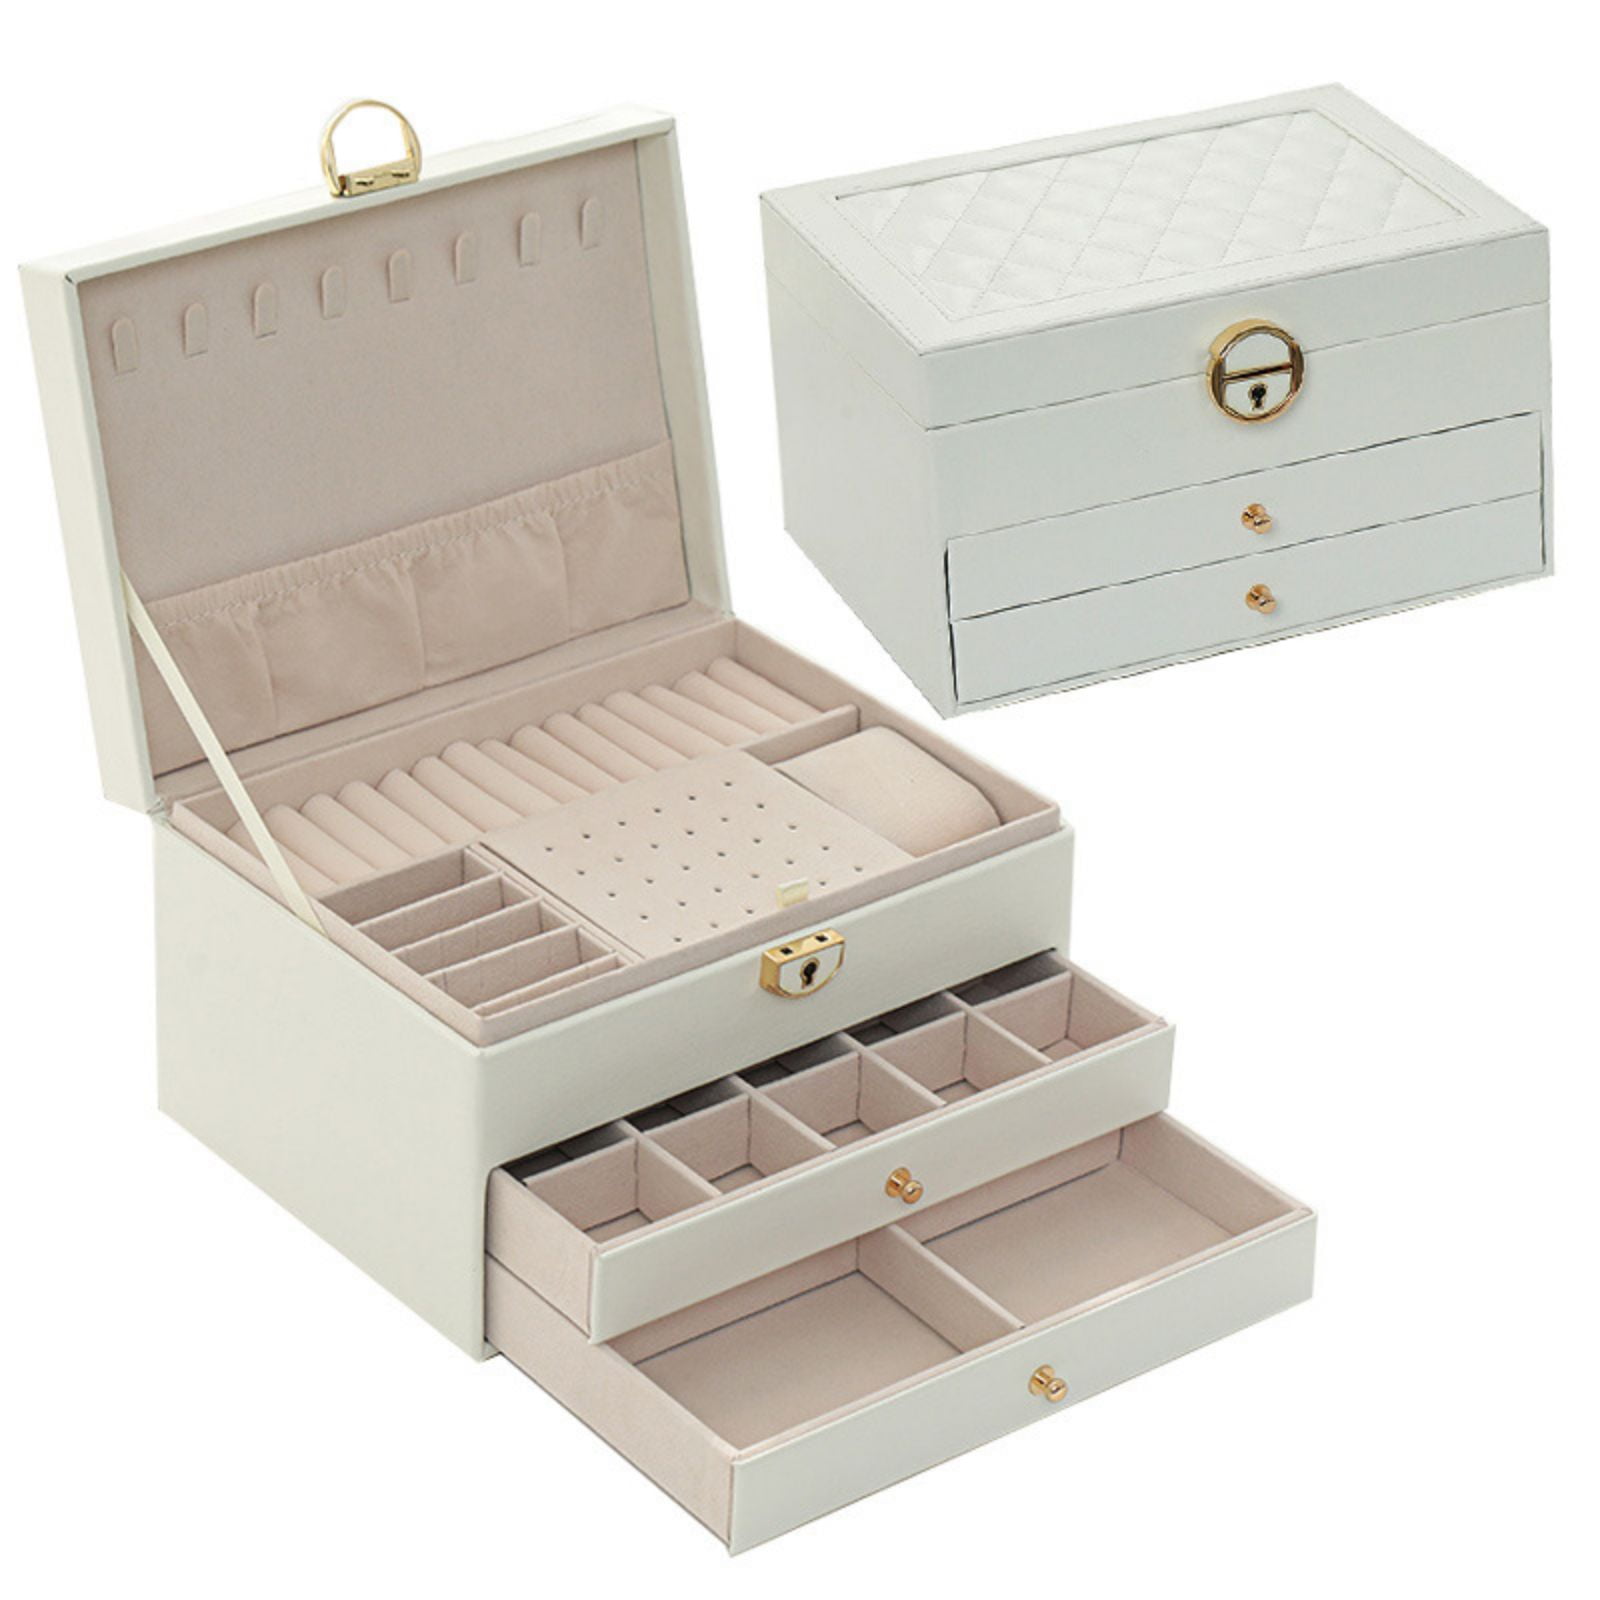 Holocky Jewelry Box for Women 3 Layer Girls Jewelry Organizer Box with ...